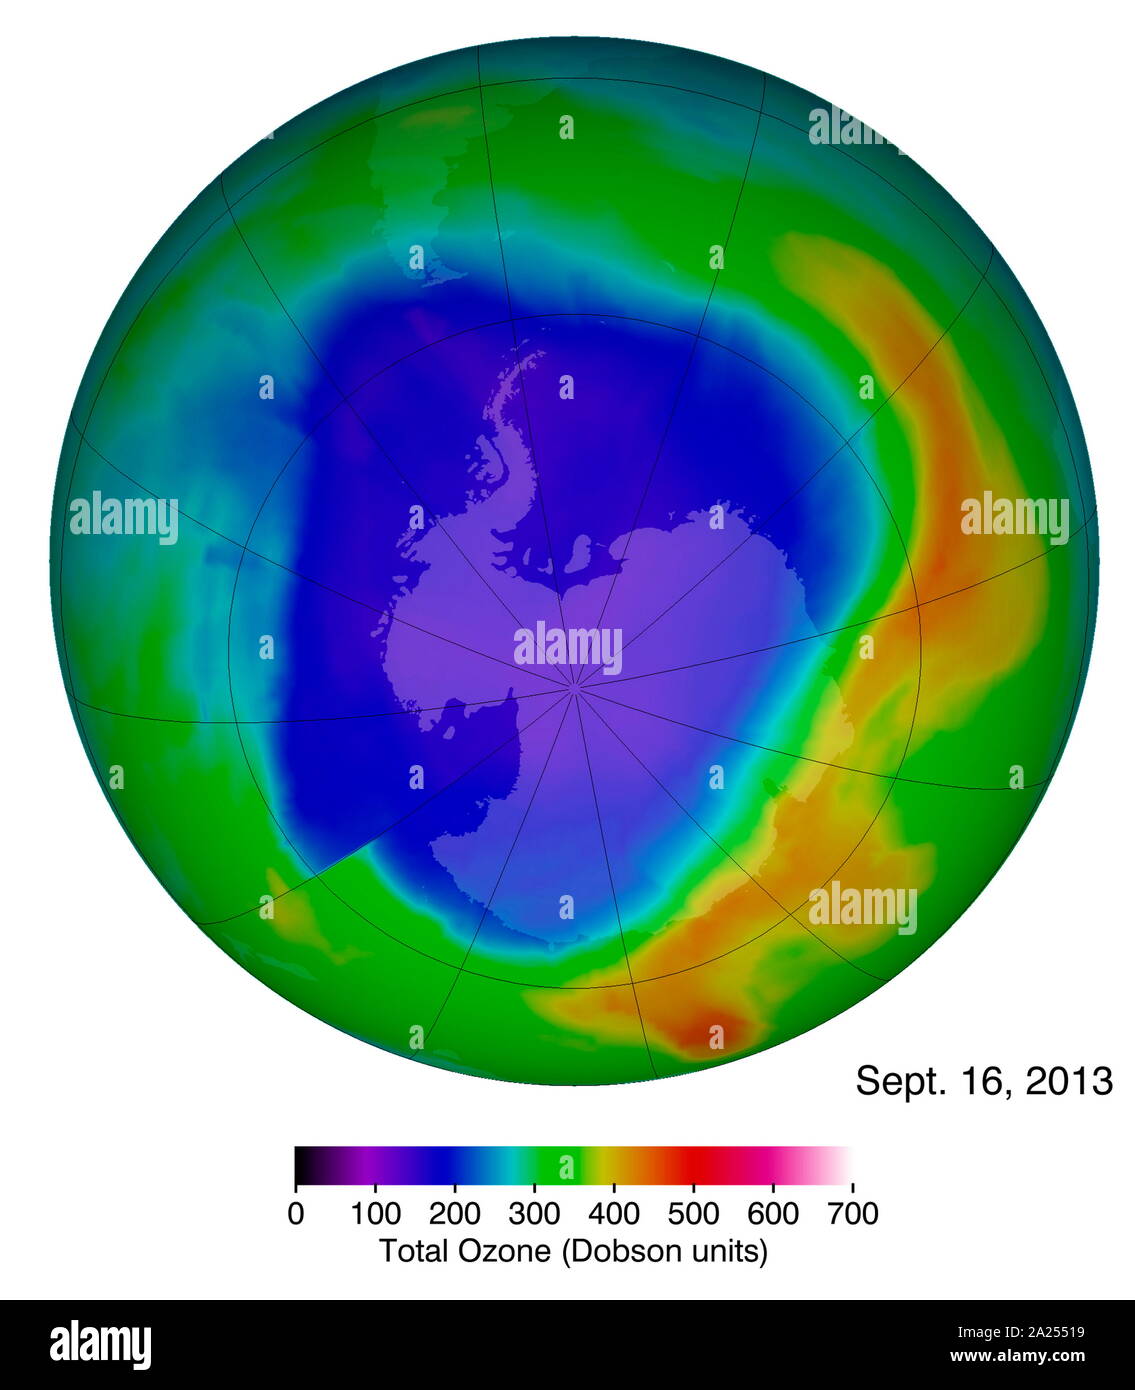 Ozono antartico foro sul Sett. Xvi 2013. Le concentrazioni di ozono per data, come indicato in blu e sono state catturate dalla OMI strumento sull'Aura satellite.&#13;&#10; Foto Stock